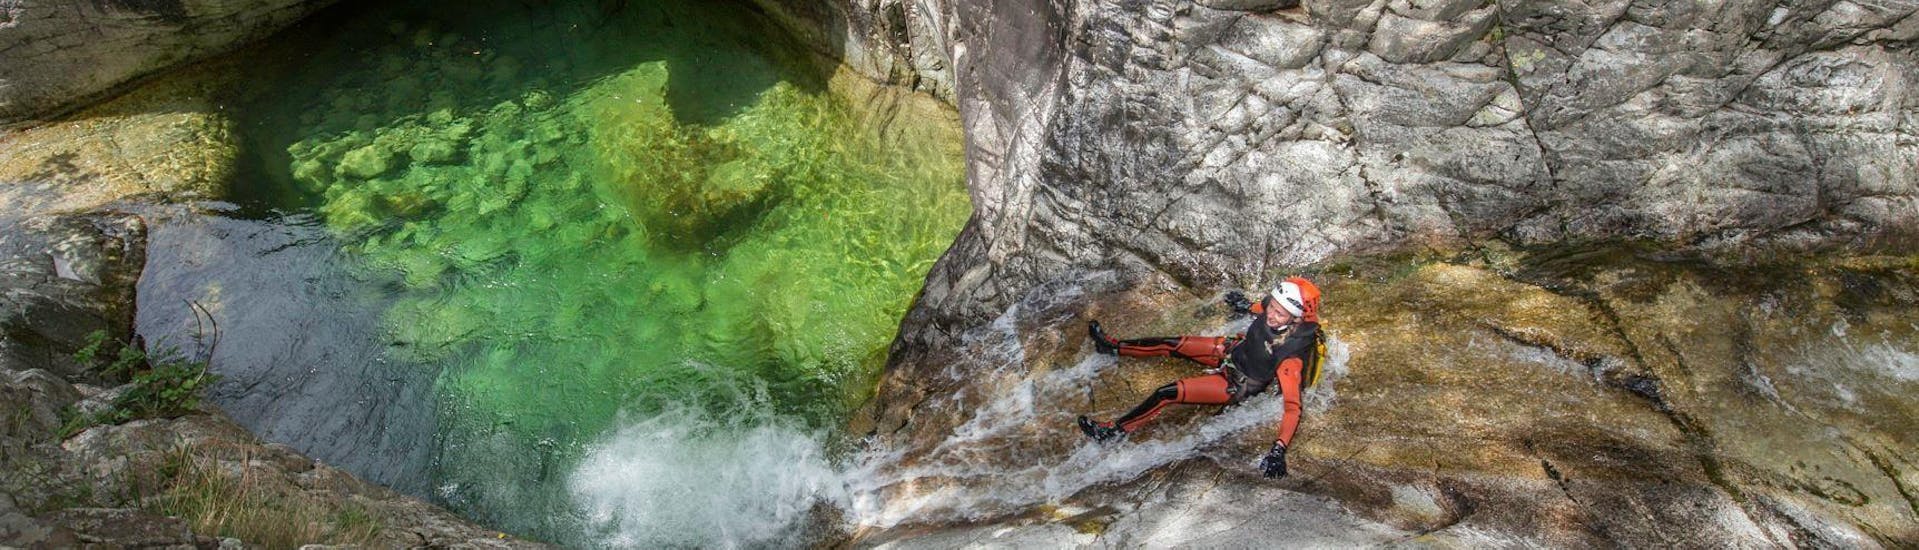 Una ragazza sta scivolando nel Canyon de Zoicu durante l'attività di Canyoning Classico con il loro istruttore di Canyon Corse.